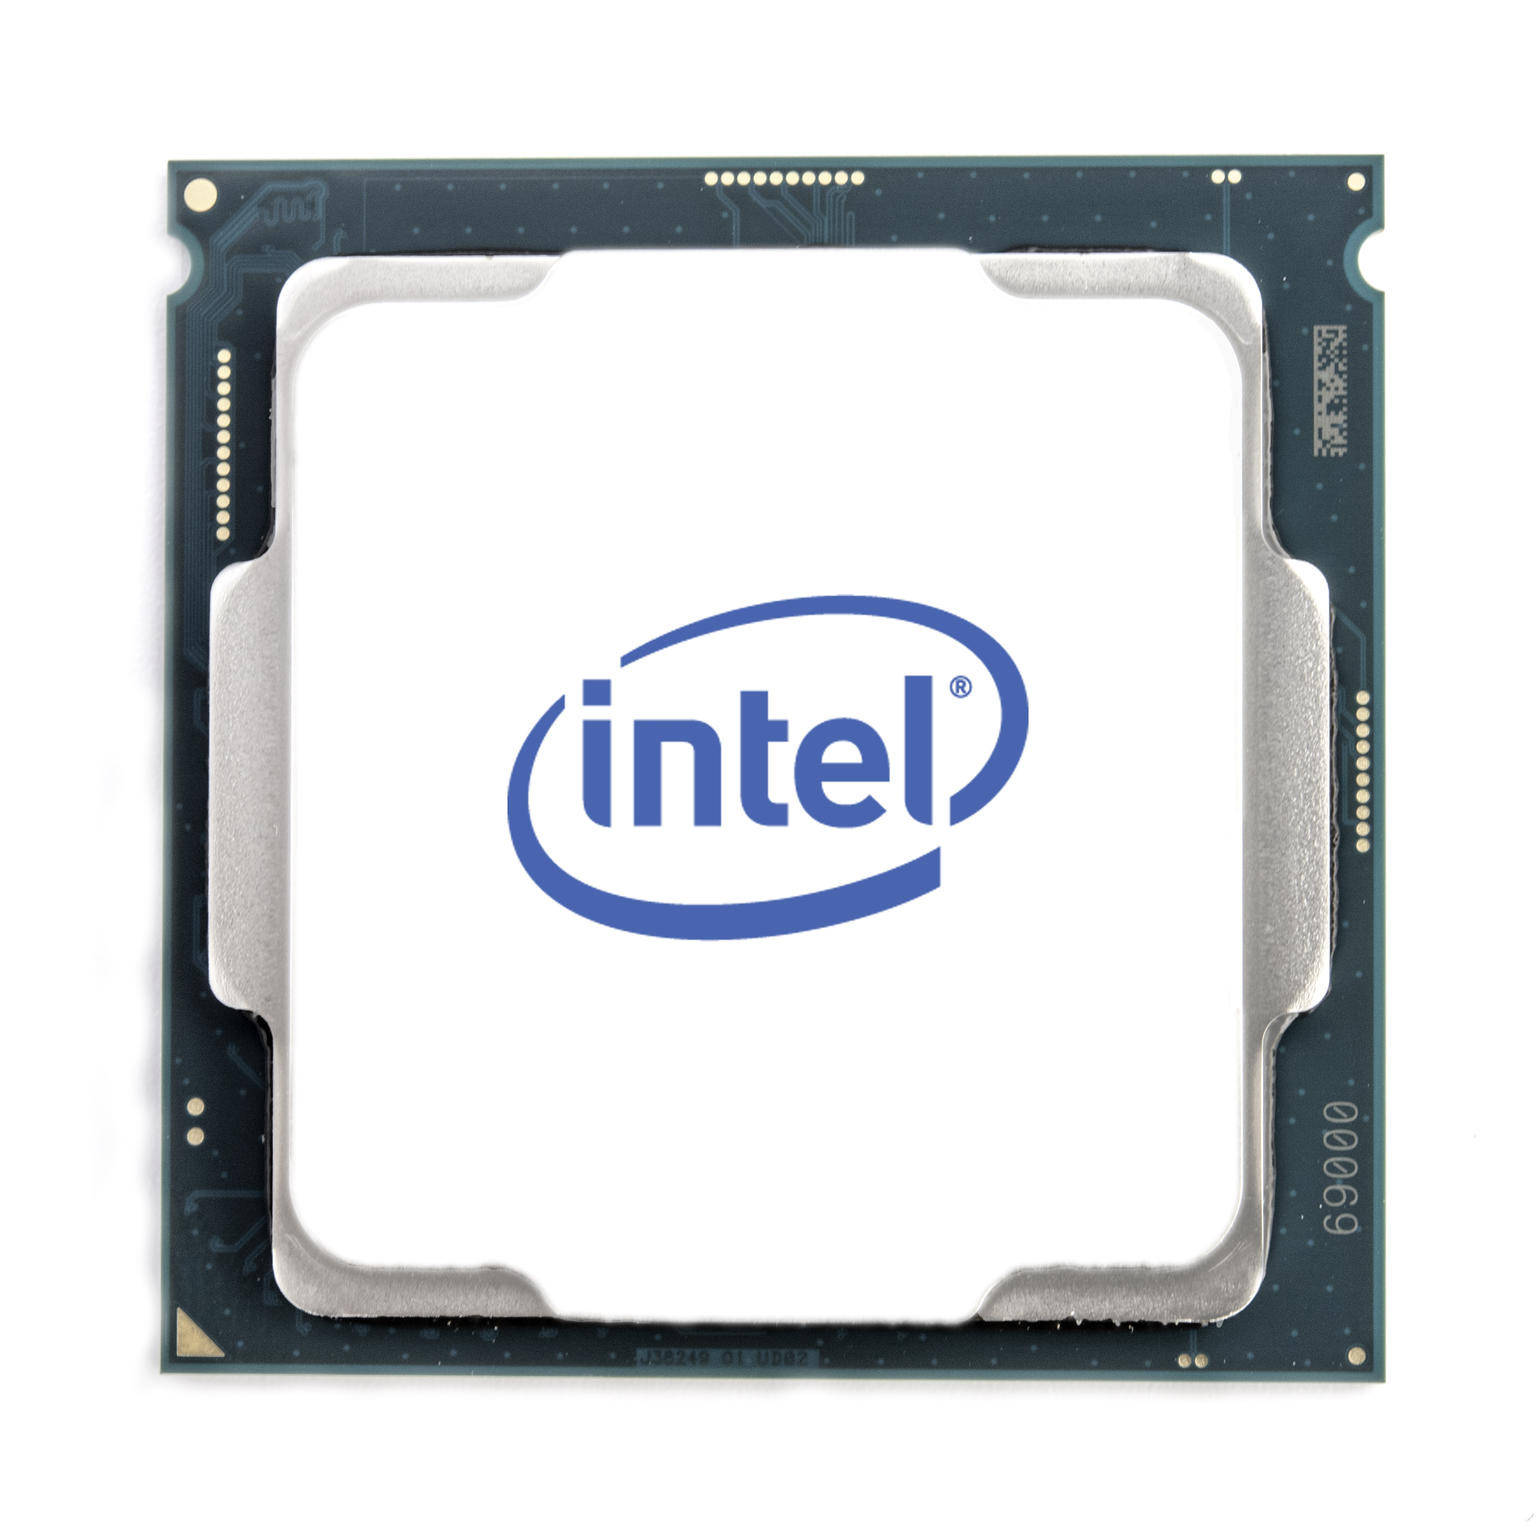 Intel Hexa Core i5-11600 processor